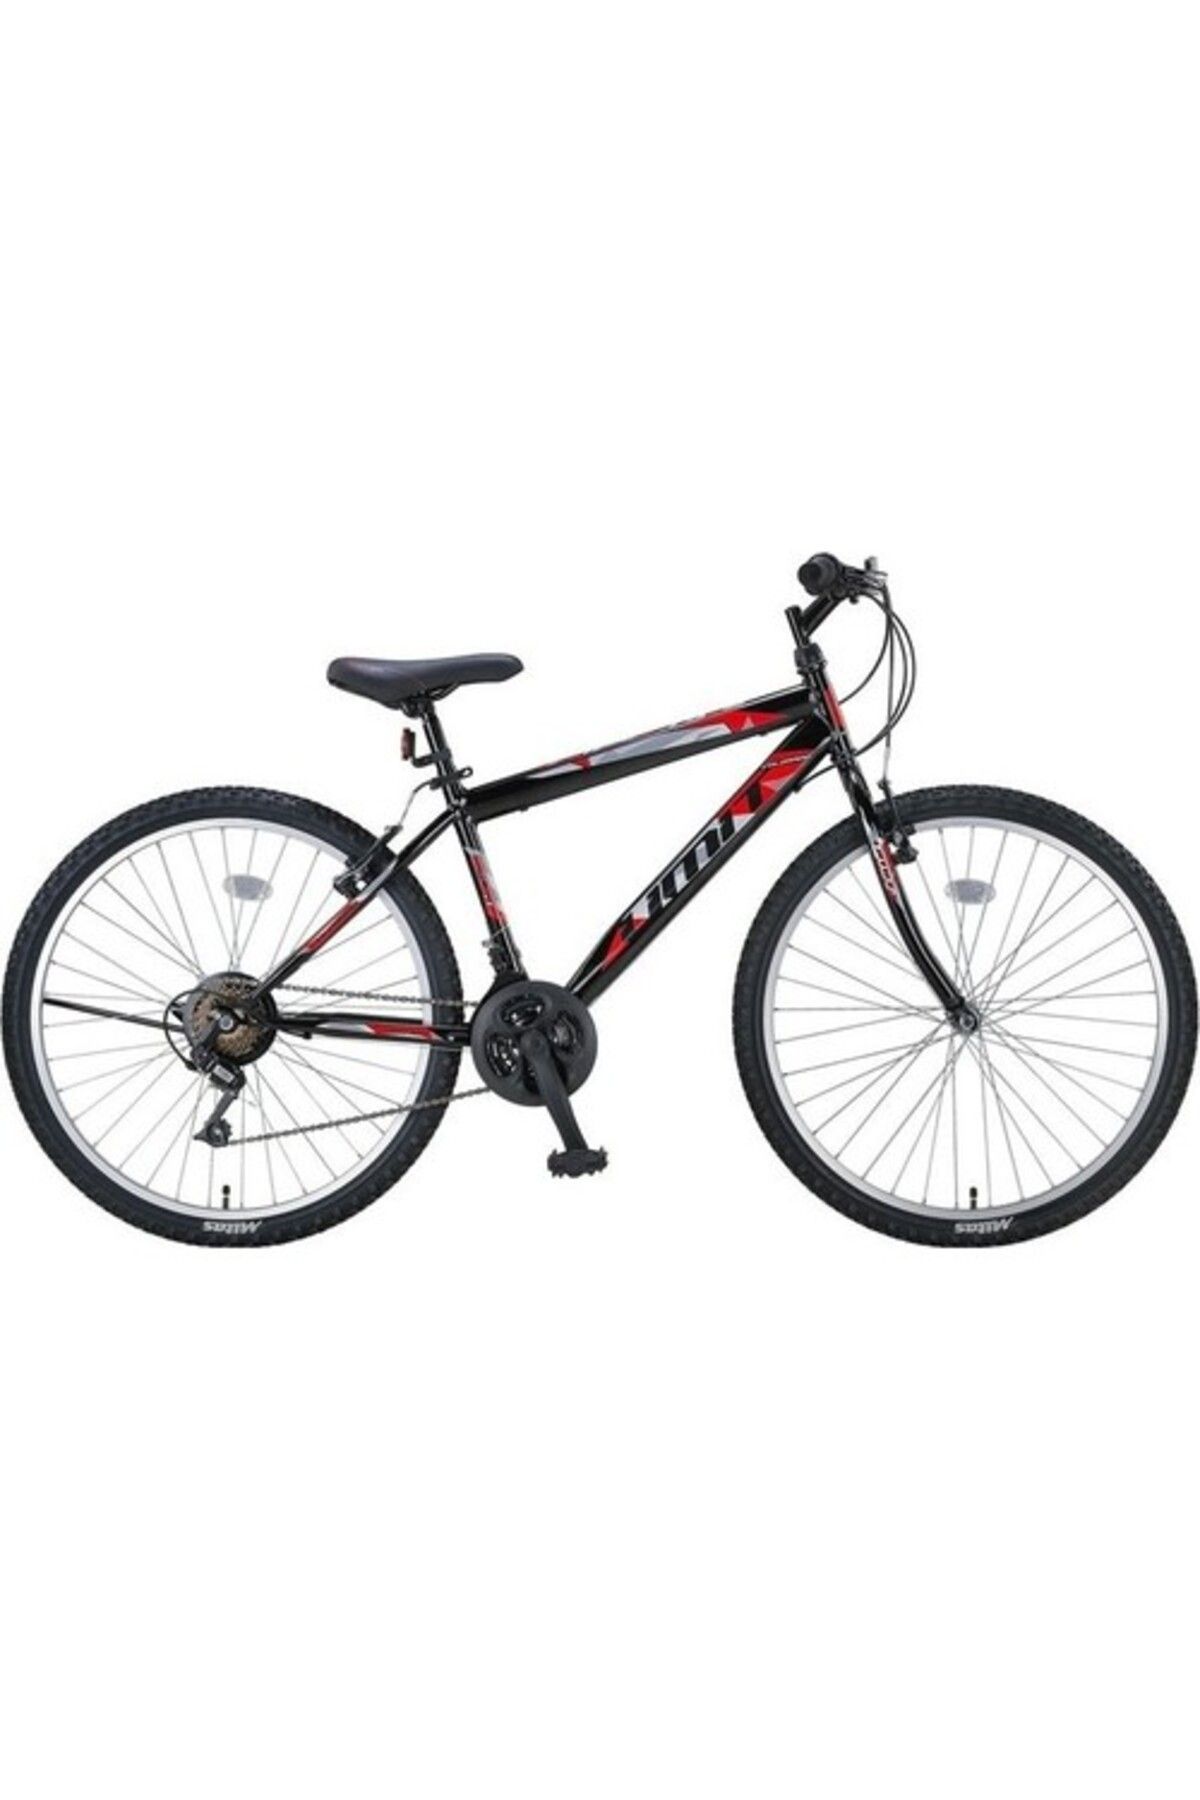 Ümit Bisiklet Ümit Colorado 24 2401 Erkek Dağ Bisikleti Siyah-Kırmızı -100078